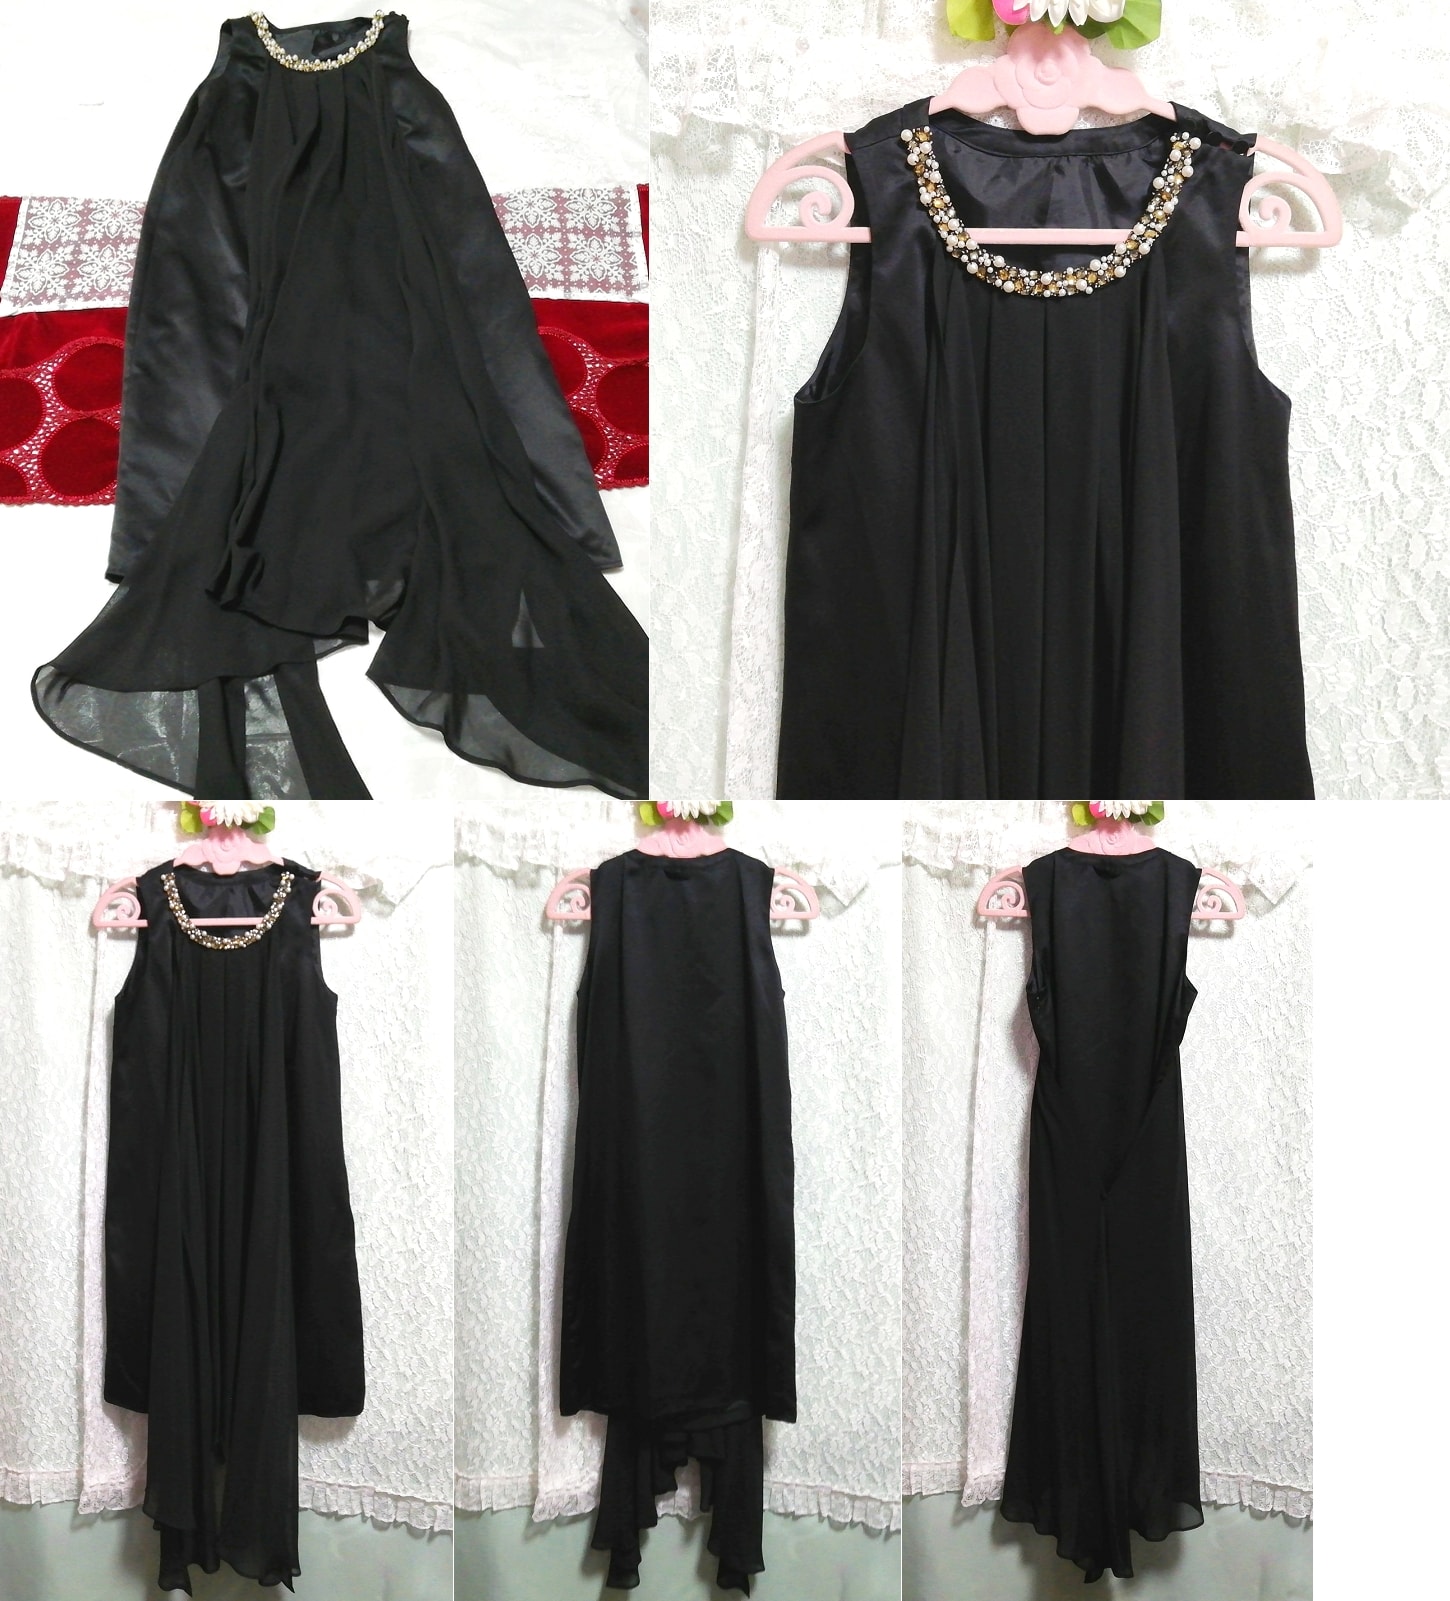 블랙 시폰 주얼 넥 네글리제 나이트가운 나이트웨어 민소매 드레스, 패션, 숙녀 패션, 잠옷, 잠옷